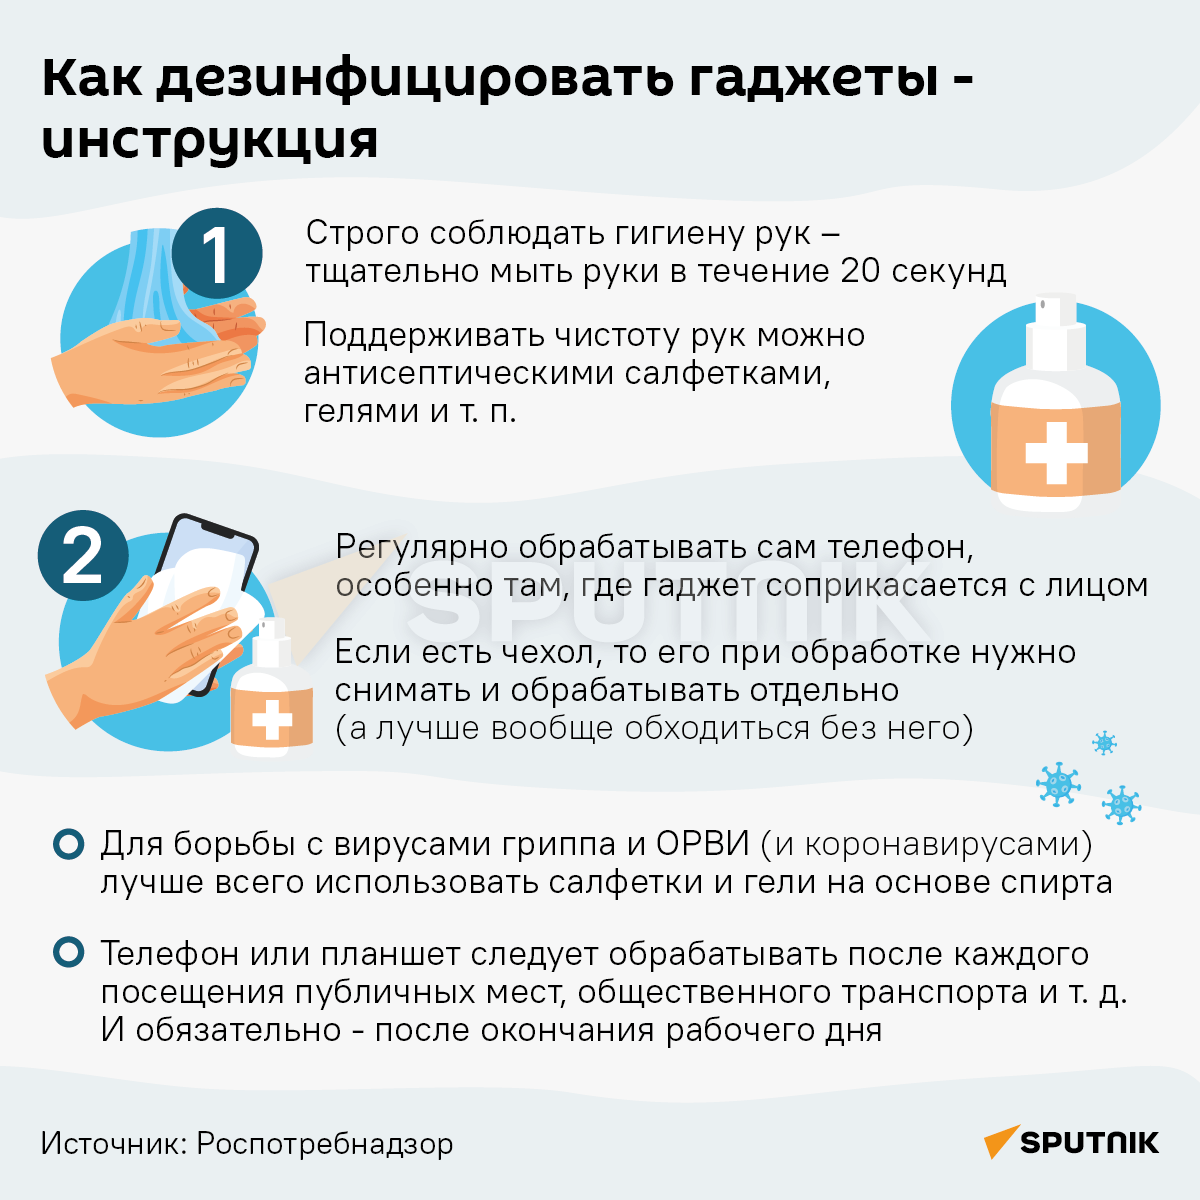 Как дезинфицировать гаджет - Инфографика - Sputnik Грузия